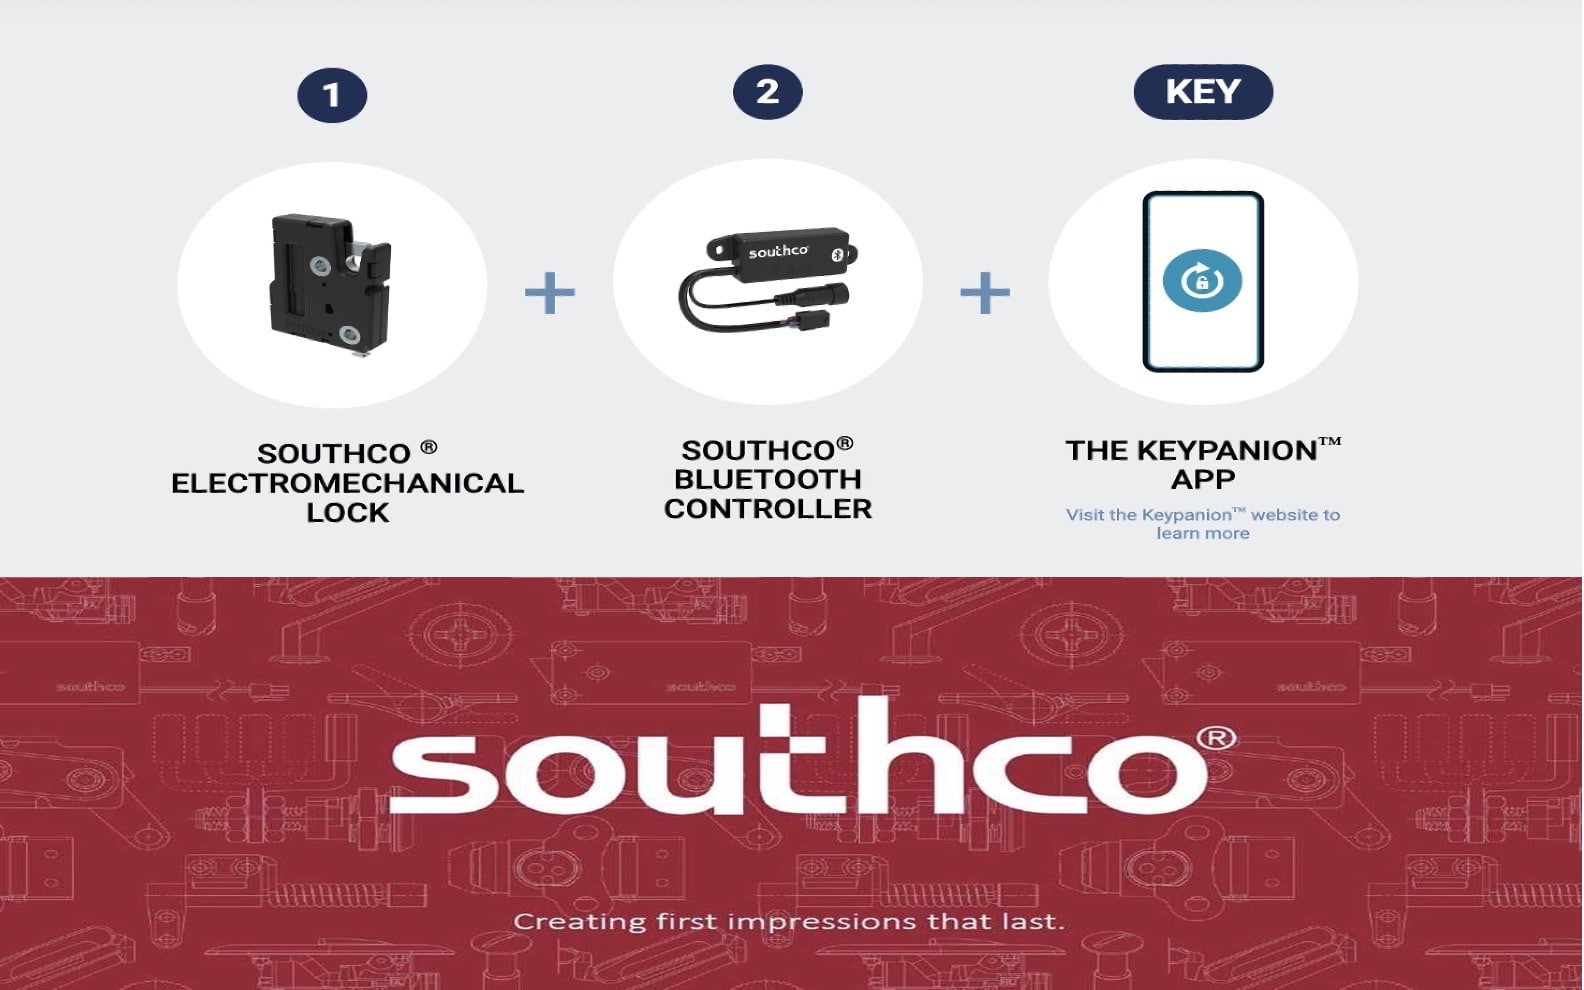 Southco keypanion app